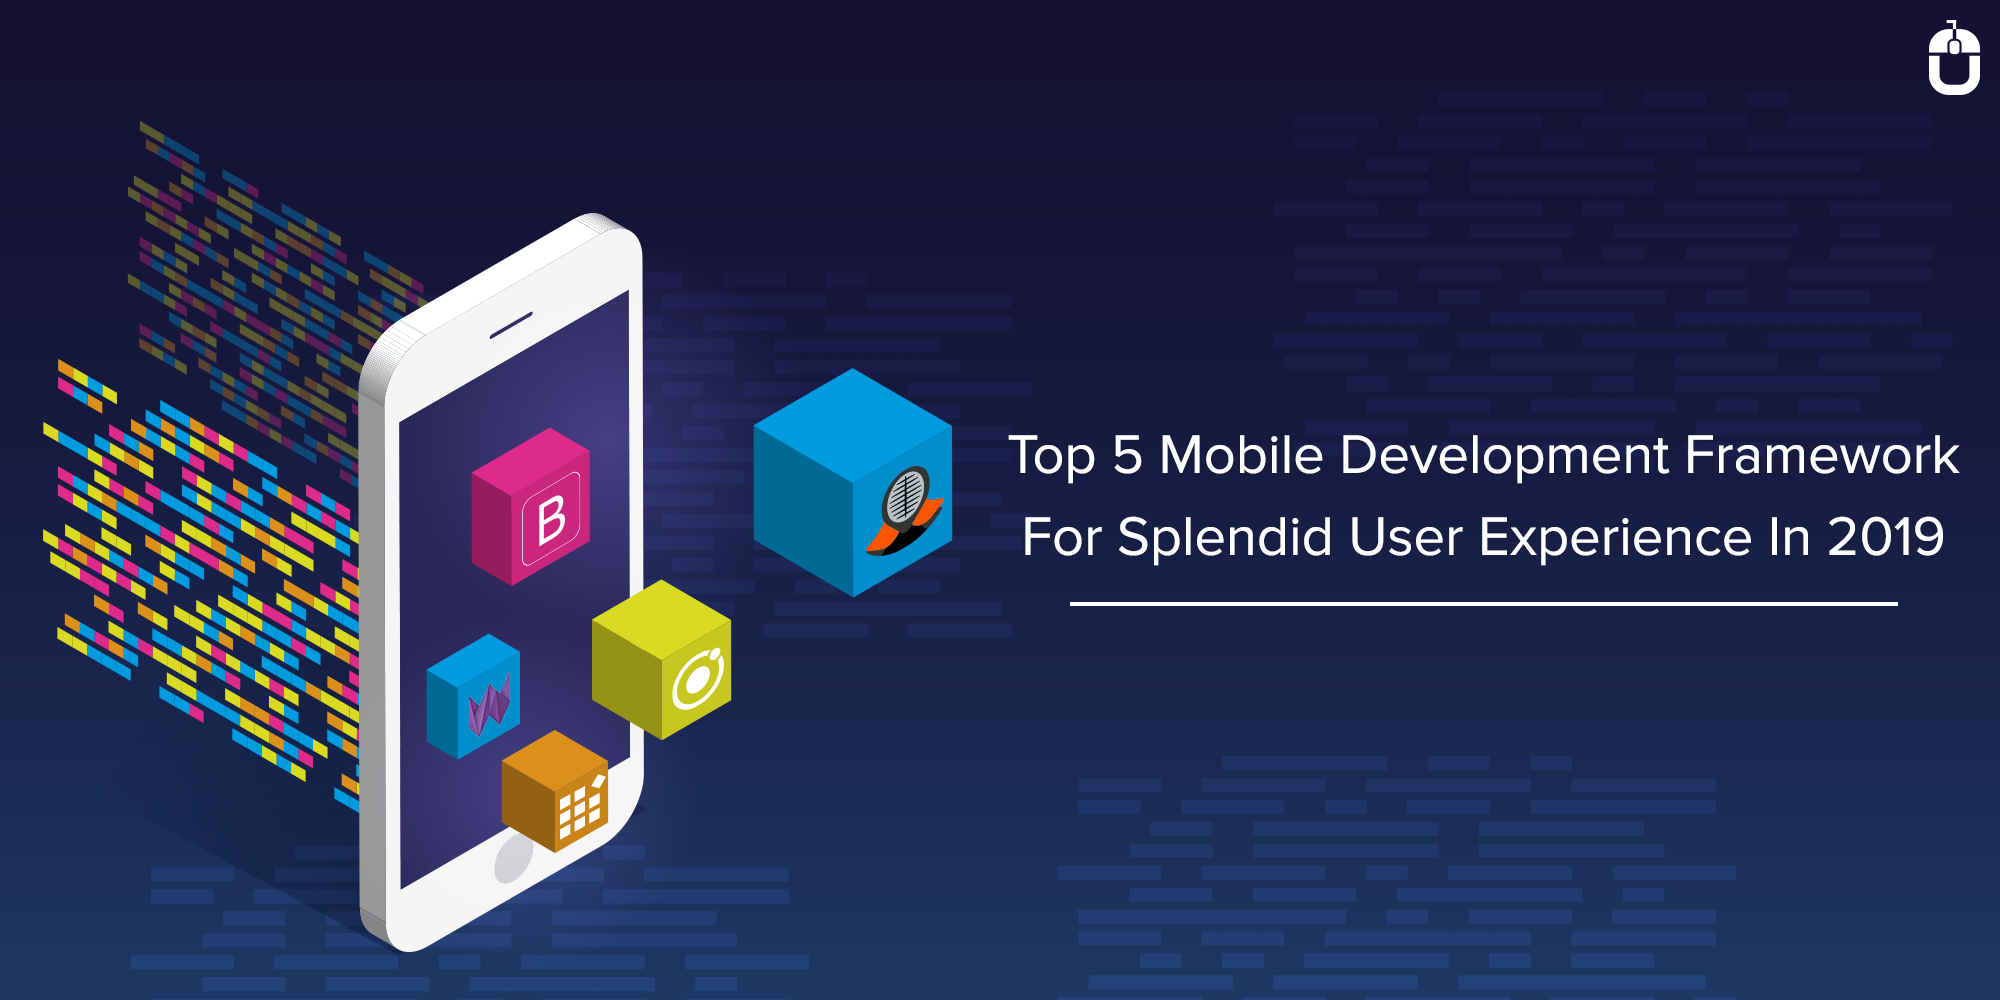 Top 5 Mobile Development Framework For Splendid User Experience In 2019